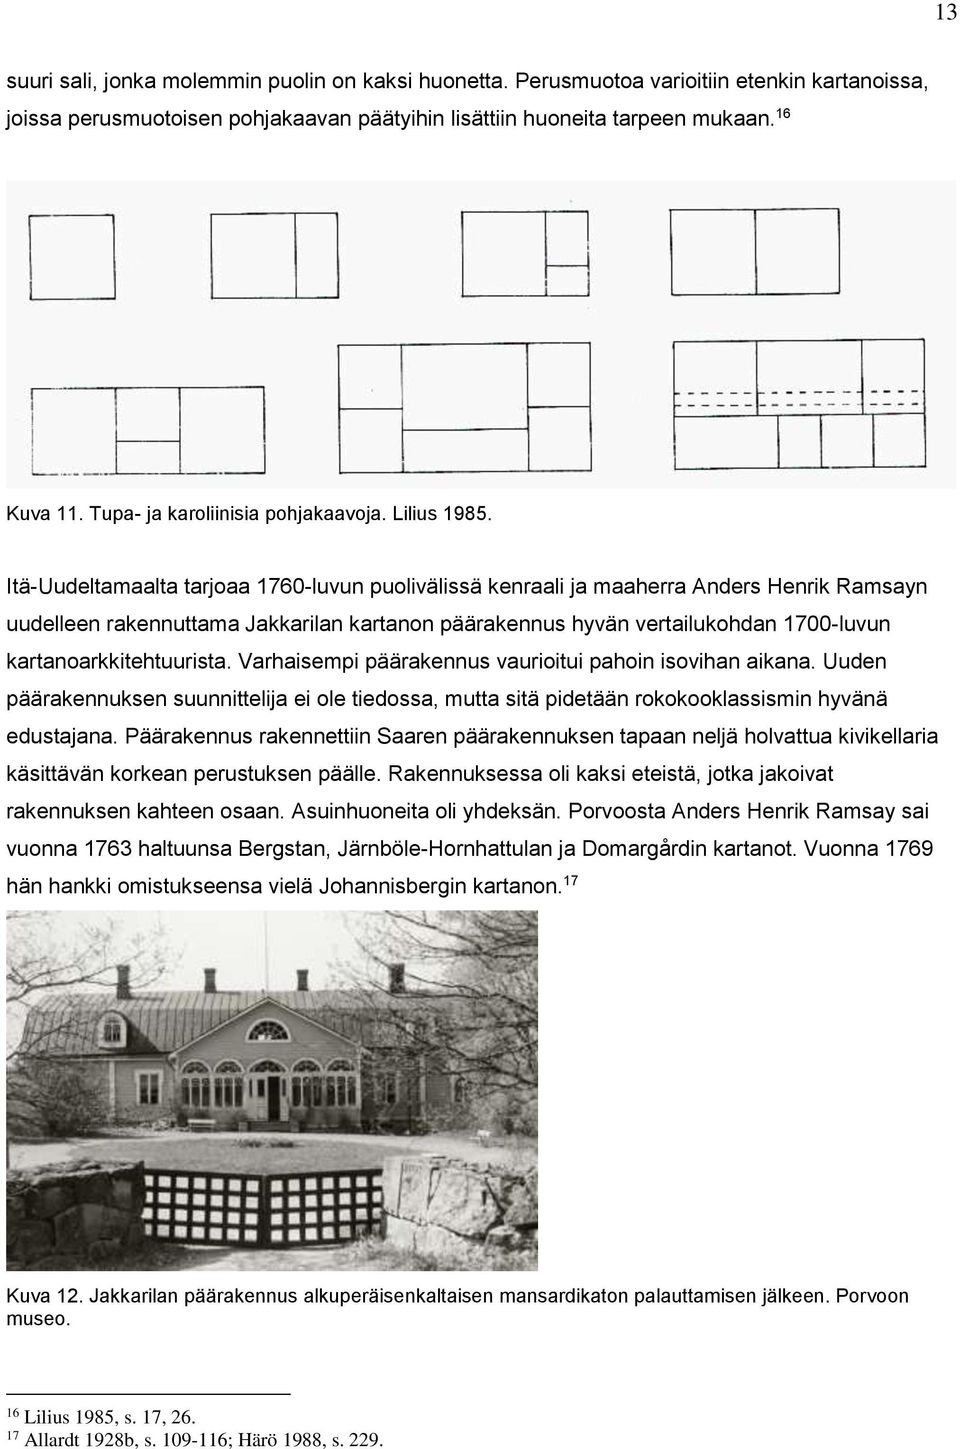 Itä-Uudeltamaalta tarjoaa 1760-luvun puolivälissä kenraali ja maaherra Anders Henrik Ramsayn uudelleen rakennuttama Jakkarilan kartanon päärakennus hyvän vertailukohdan 1700-luvun